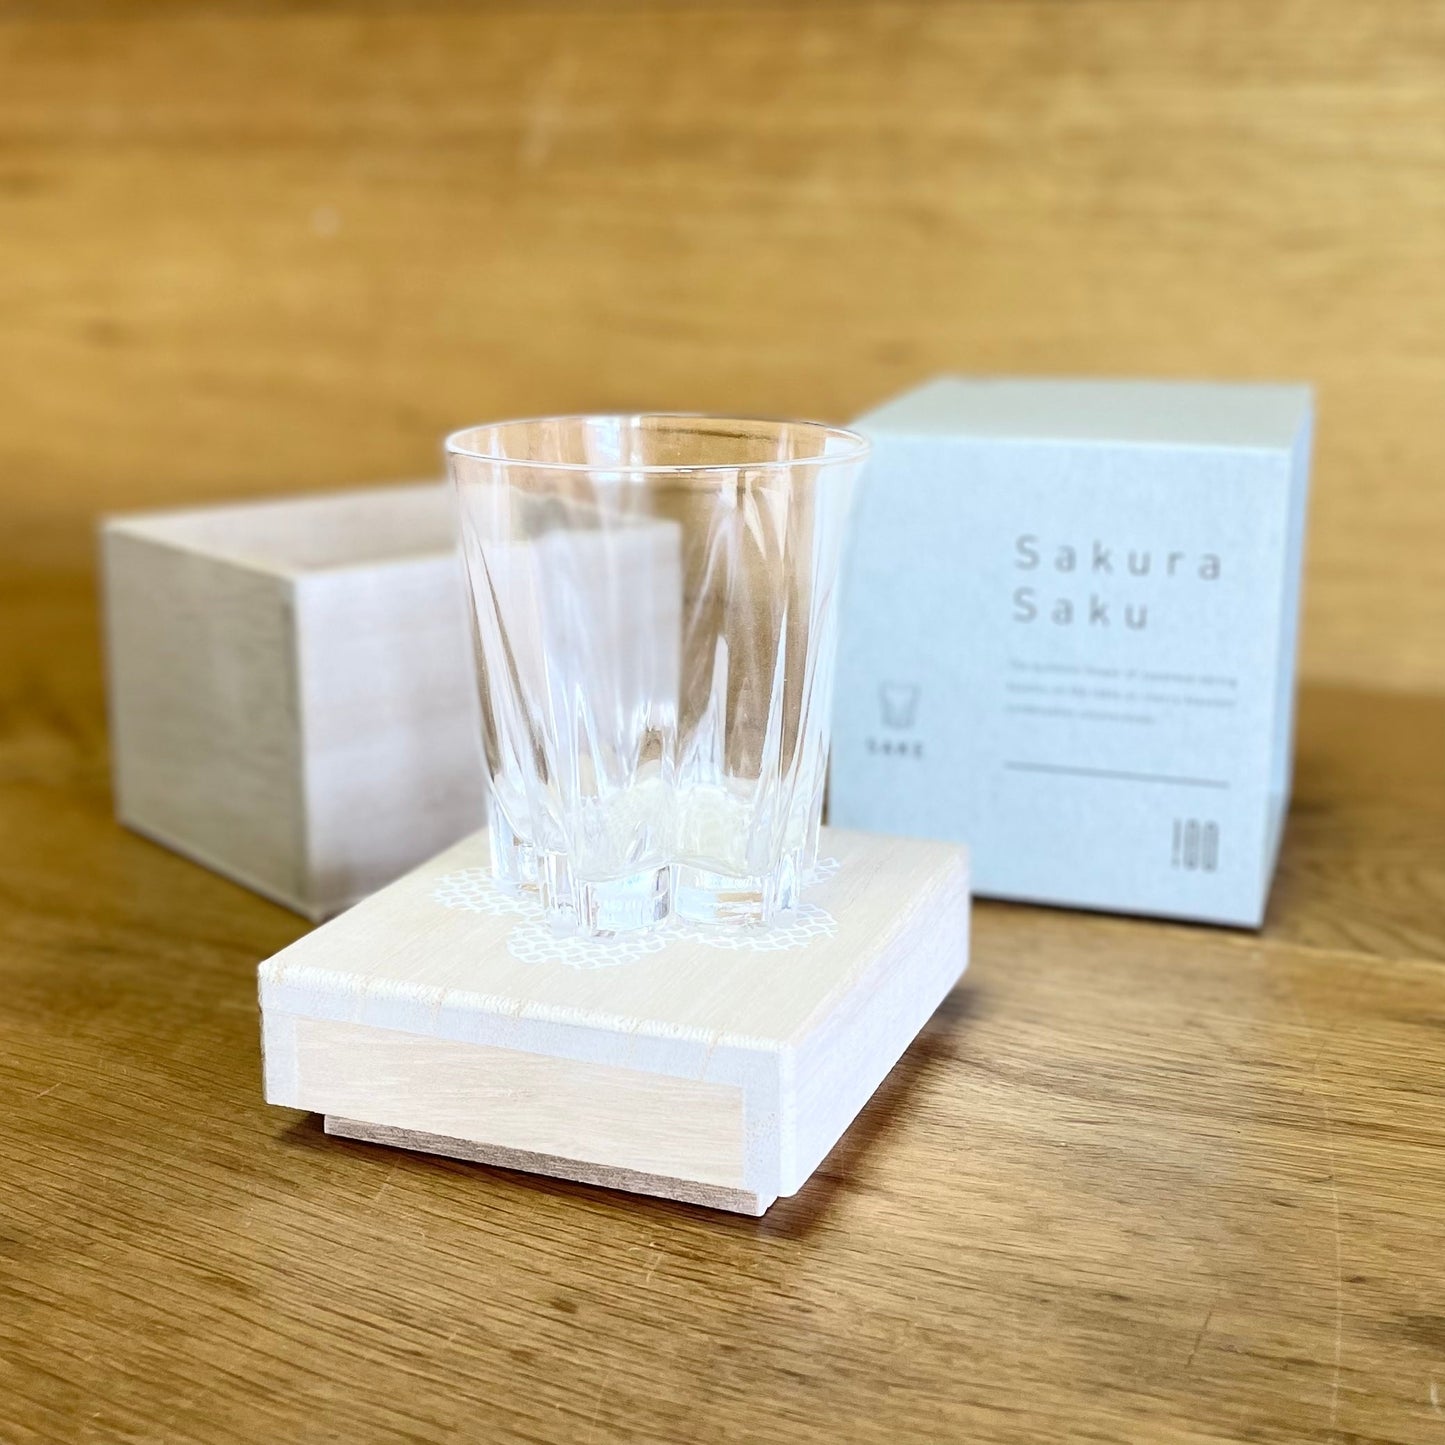 SAKURASAKU Sake Glass Set